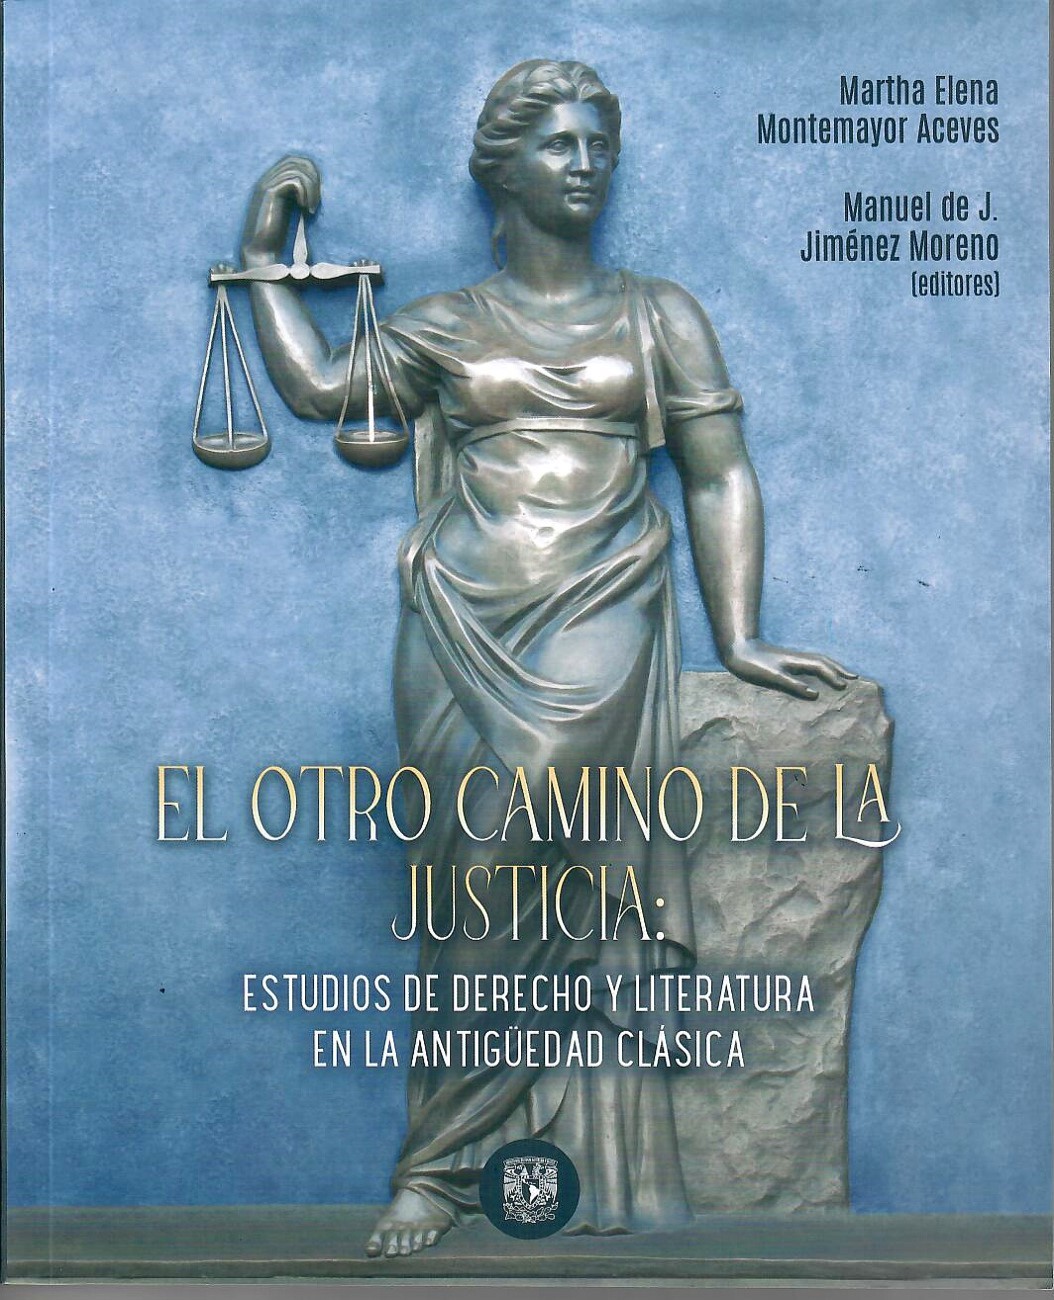 El otro camino de la justicia: Estudios de derecho y literatura en la antigüedad clásica